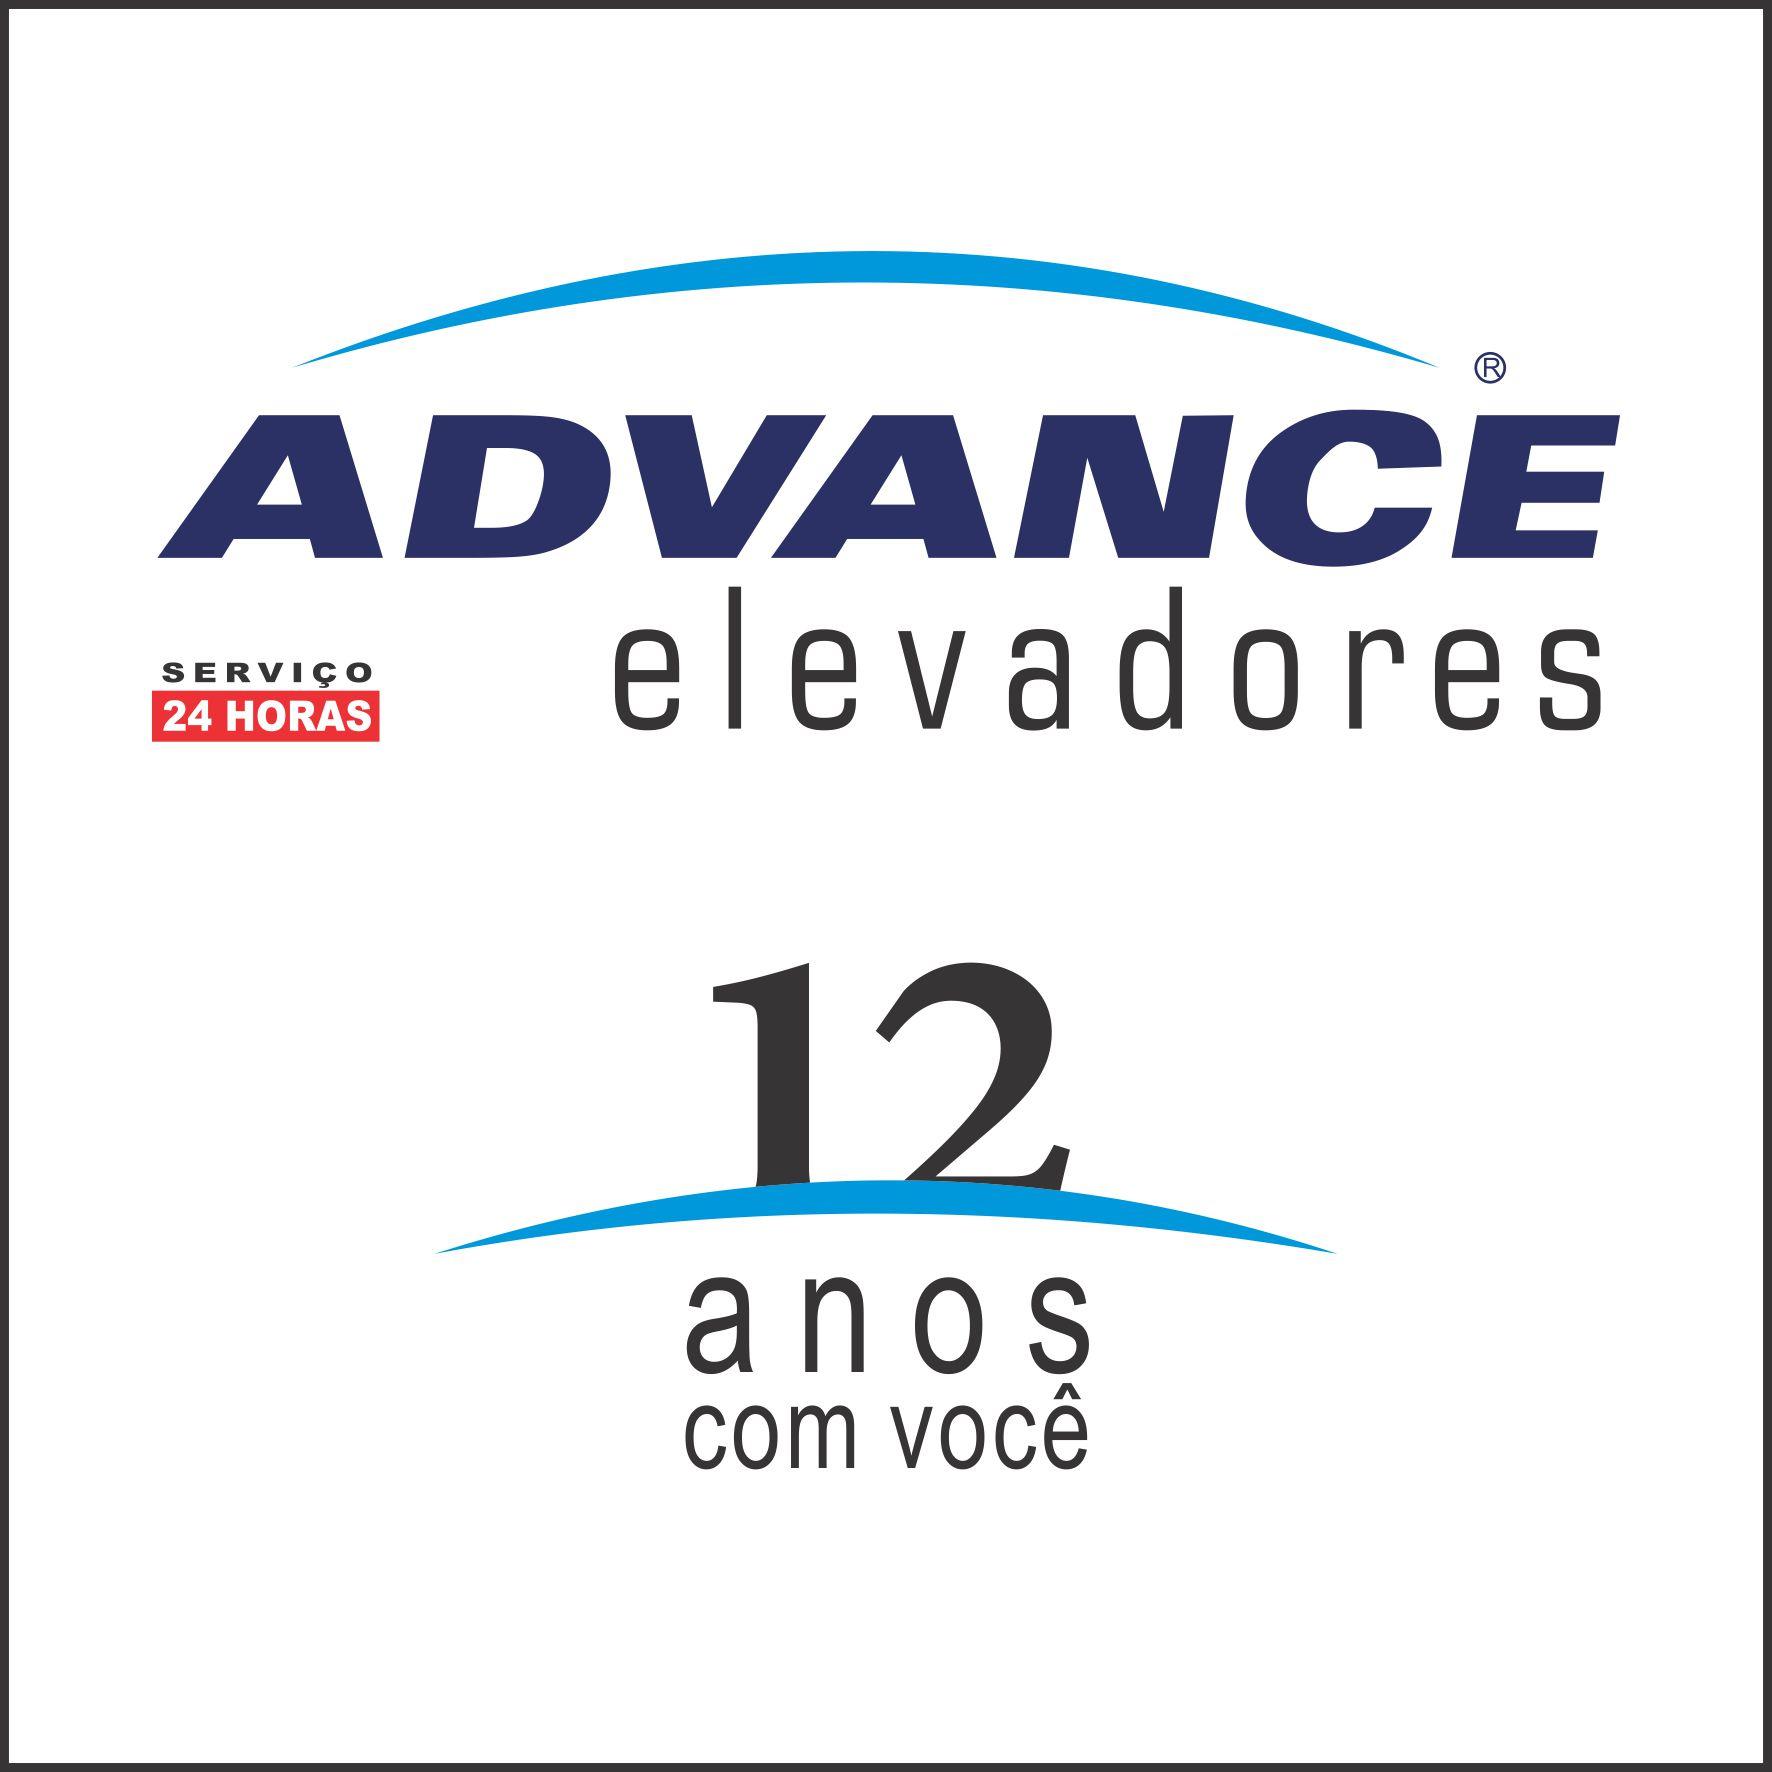 ADVANCE ELEVADORES PORTO ALEGRE logo